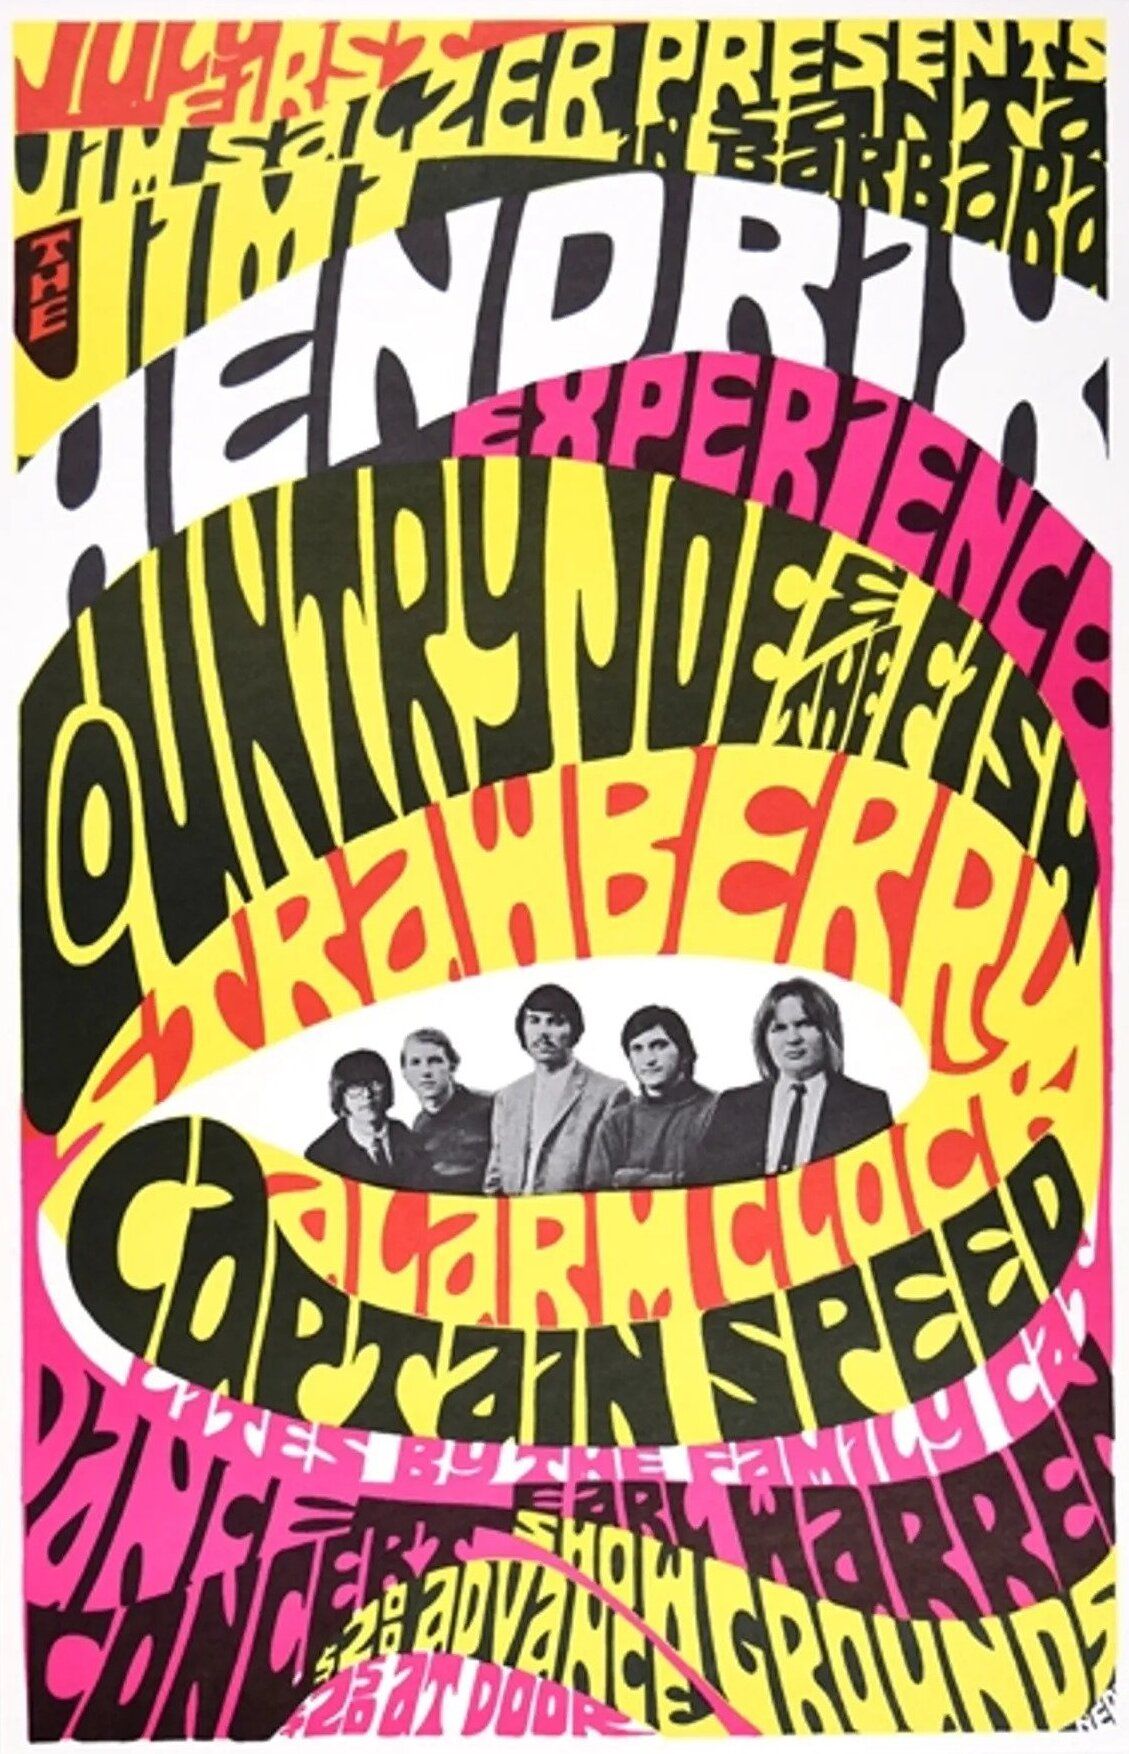 Jim Hendrix Earl Warren Fairgrounds Second Print 1967 Concert Poster